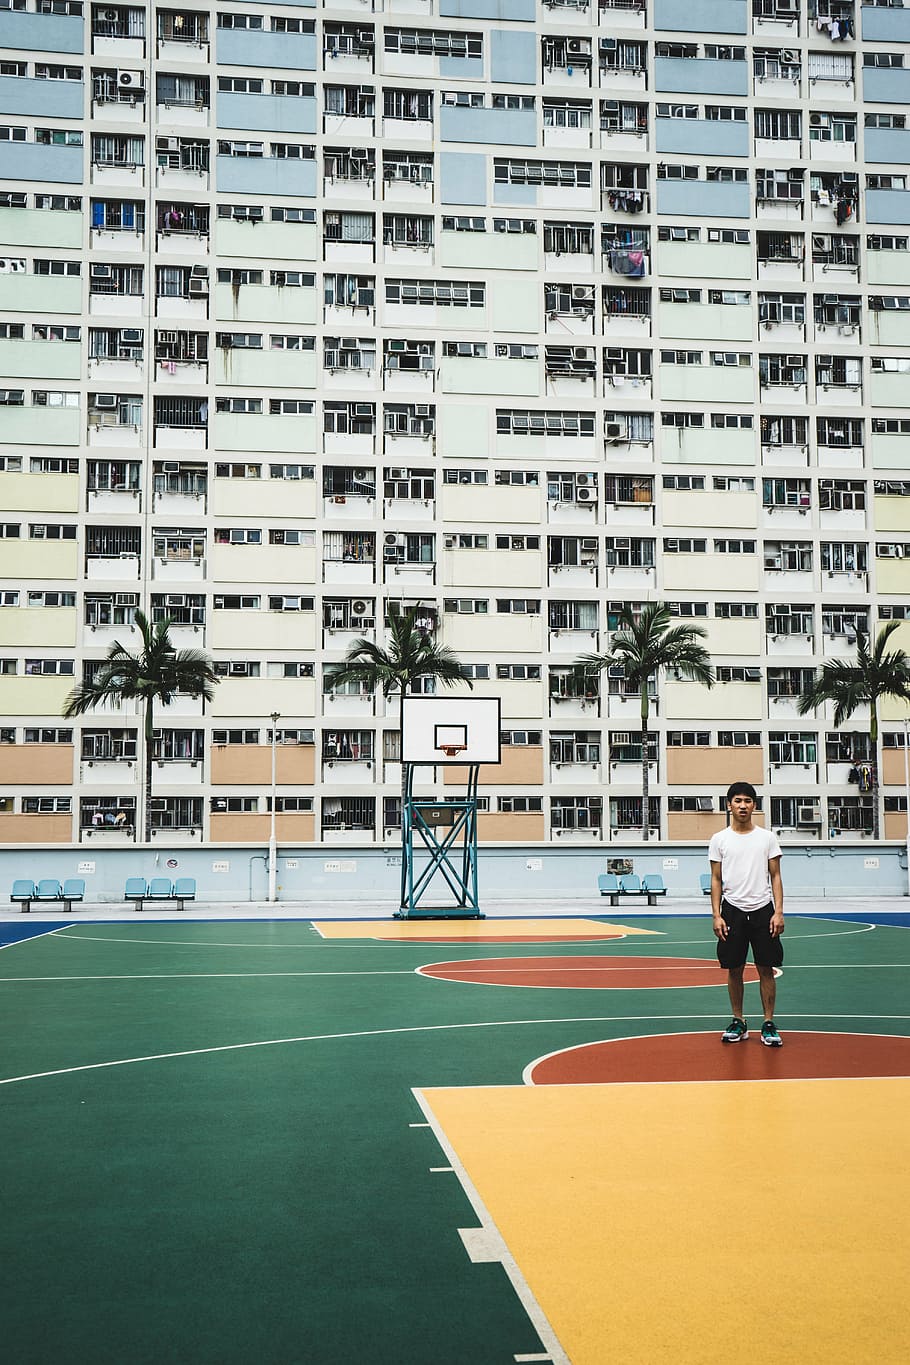 manusia, berdiri, melempar, garis bola basket, hotel, bangunan, kota, perkotaan, pria, pemain